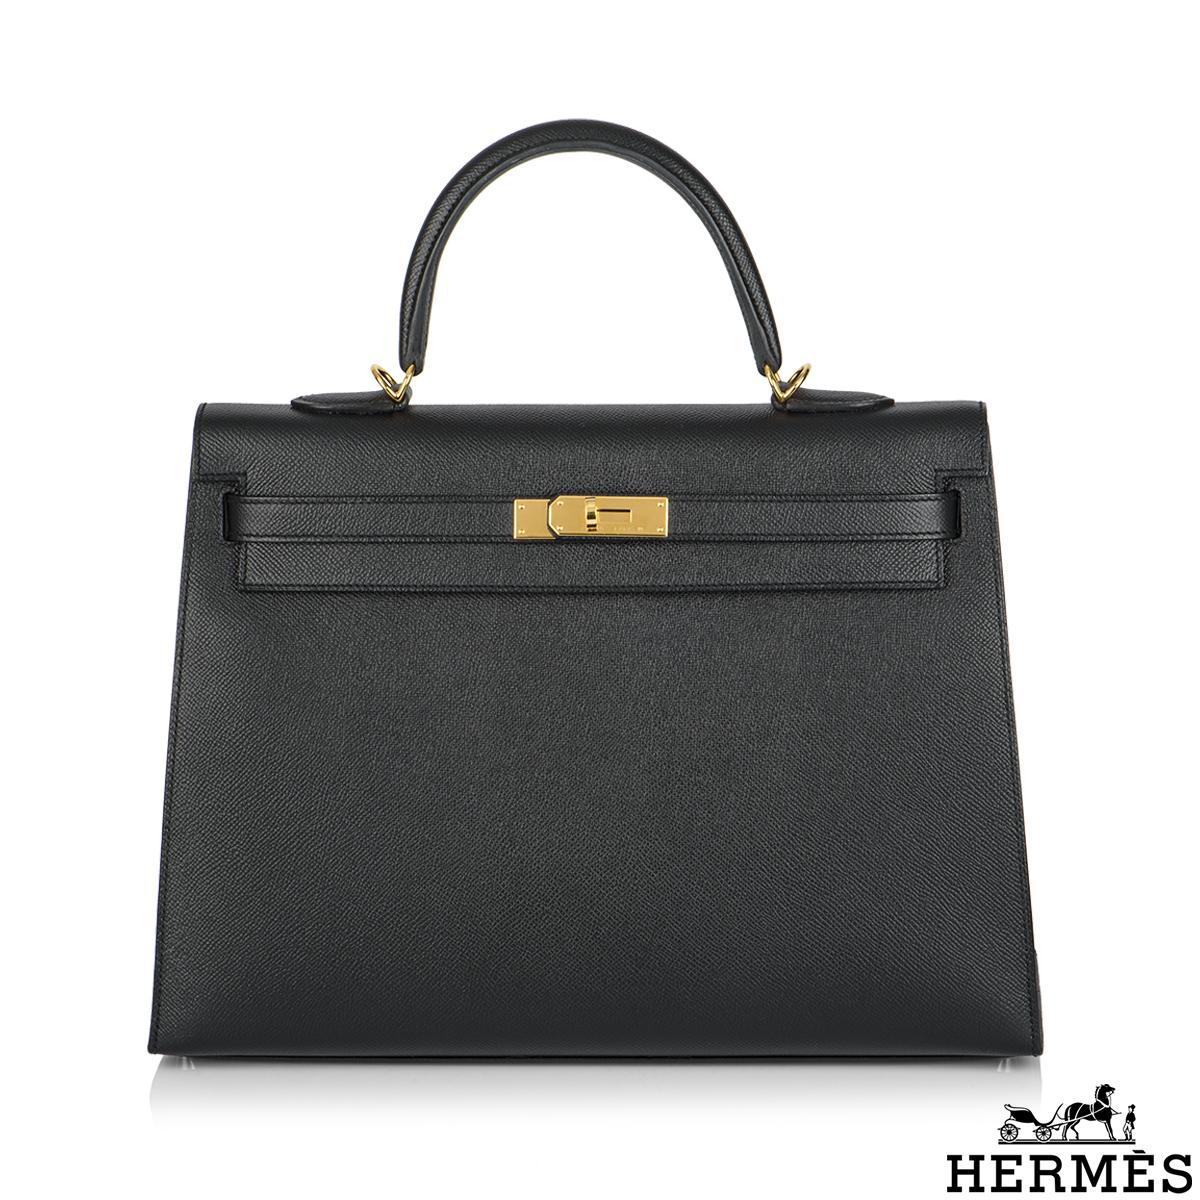 Eine wunderschöne Hermès Kelly 35cm Tasche. Das Äußere dieser Special Order Kelly zeichnet sich durch einen Sellier-Stil in schwarzem Veau-Epsom-Leder aus. Das noirfarbene Leder wird durch goldene Beschläge und farblich abgestimmte Nähte ergänzt.